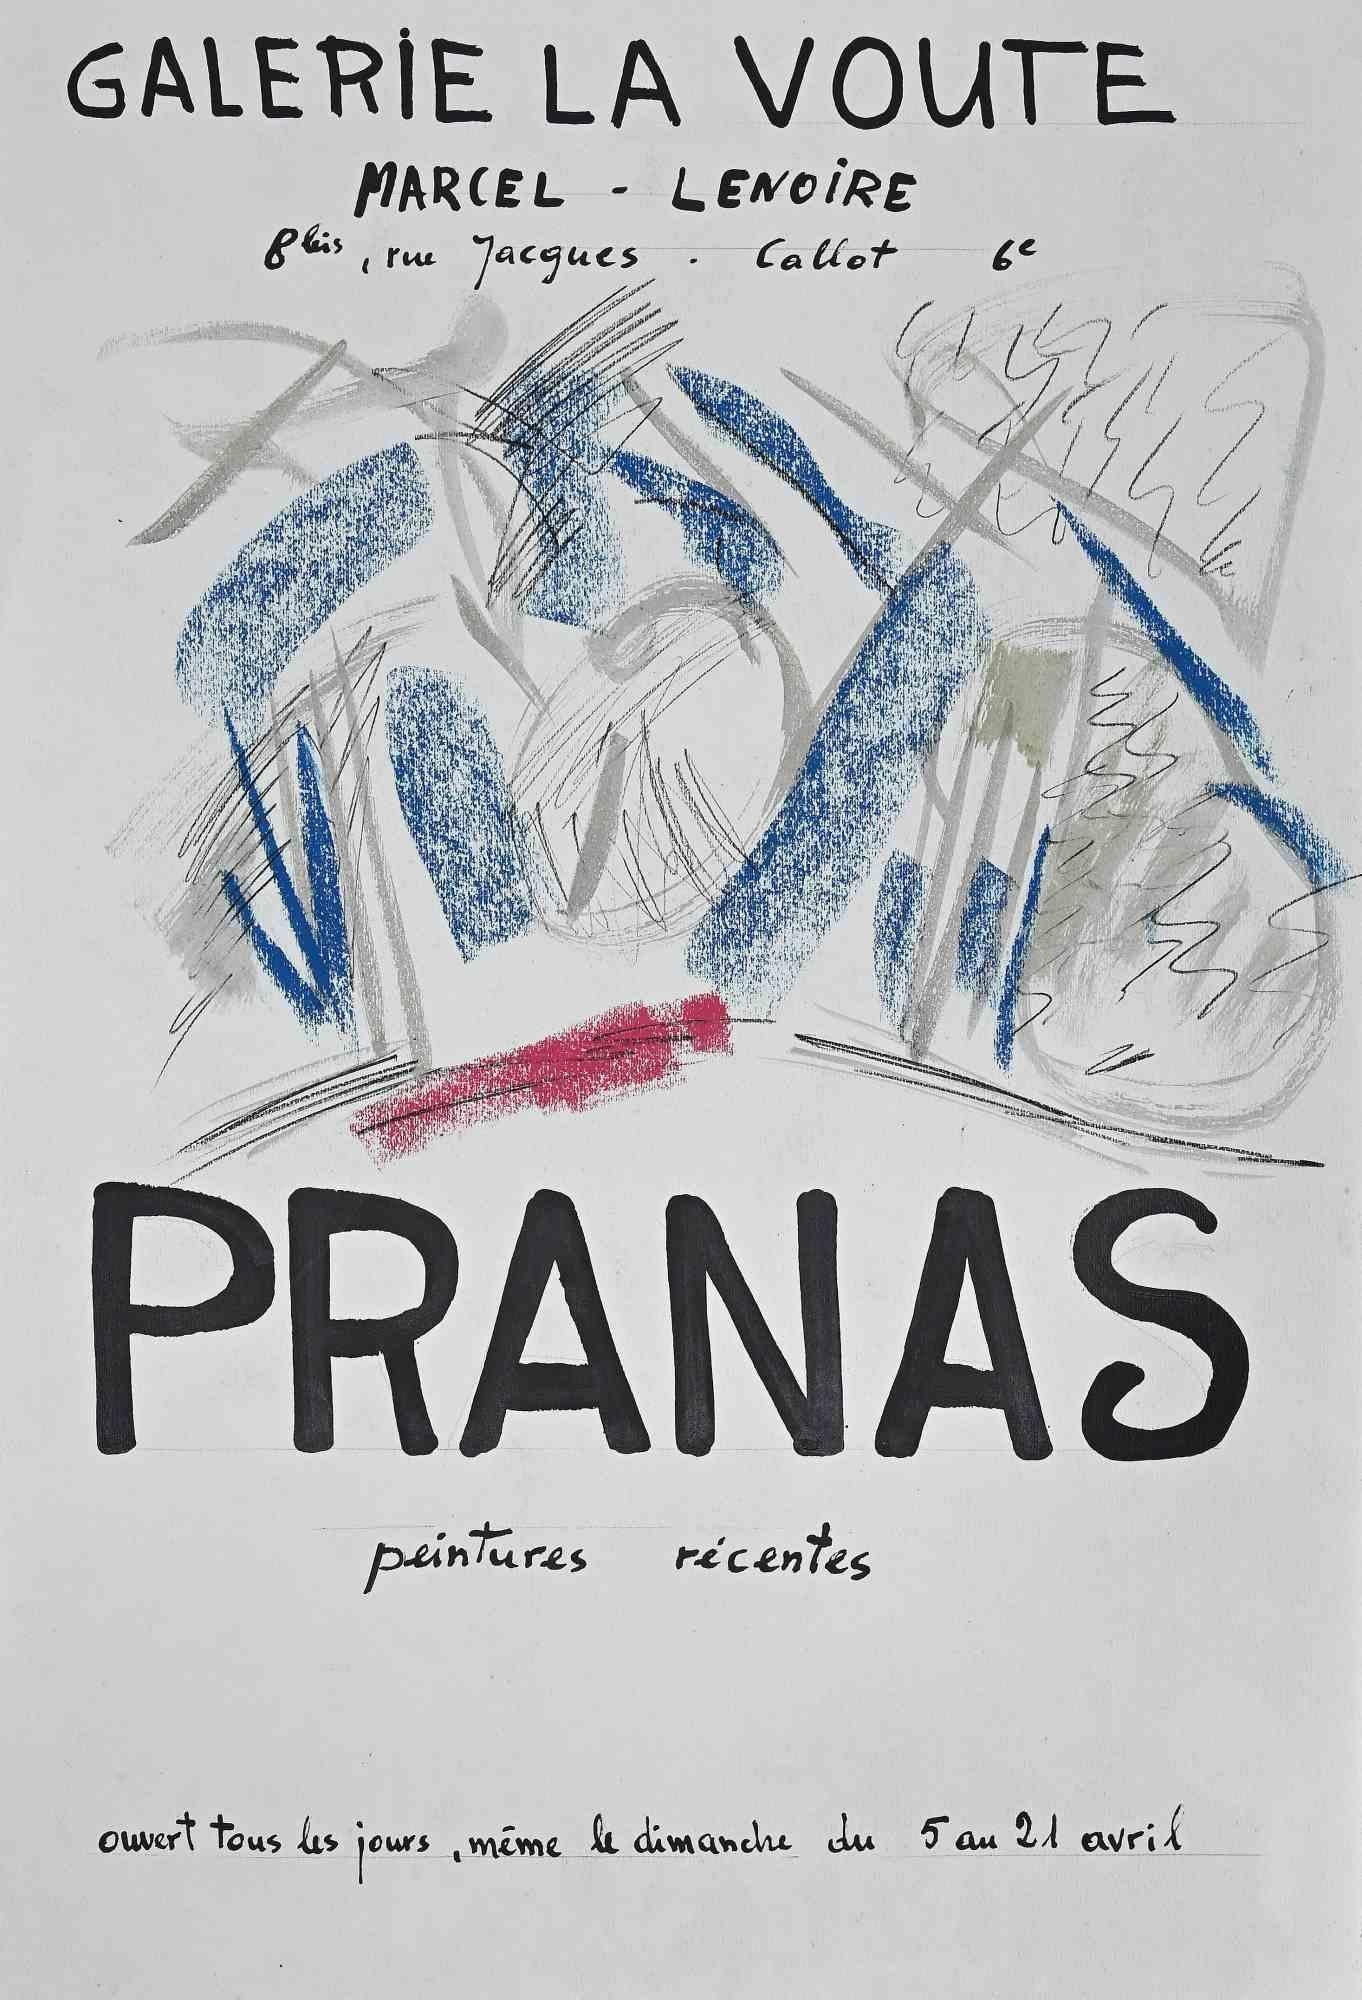 Poster Pranas ist ein Originalplakat für eine Ausstellung von Pranas-Bildern in der Galerie La Voute in Parise (1960).

Das Kunstwerk ist nach einer Arbeit des Künstlers in Tusche, Pastell und Aquarell realisiert. In gutem Zustand. 